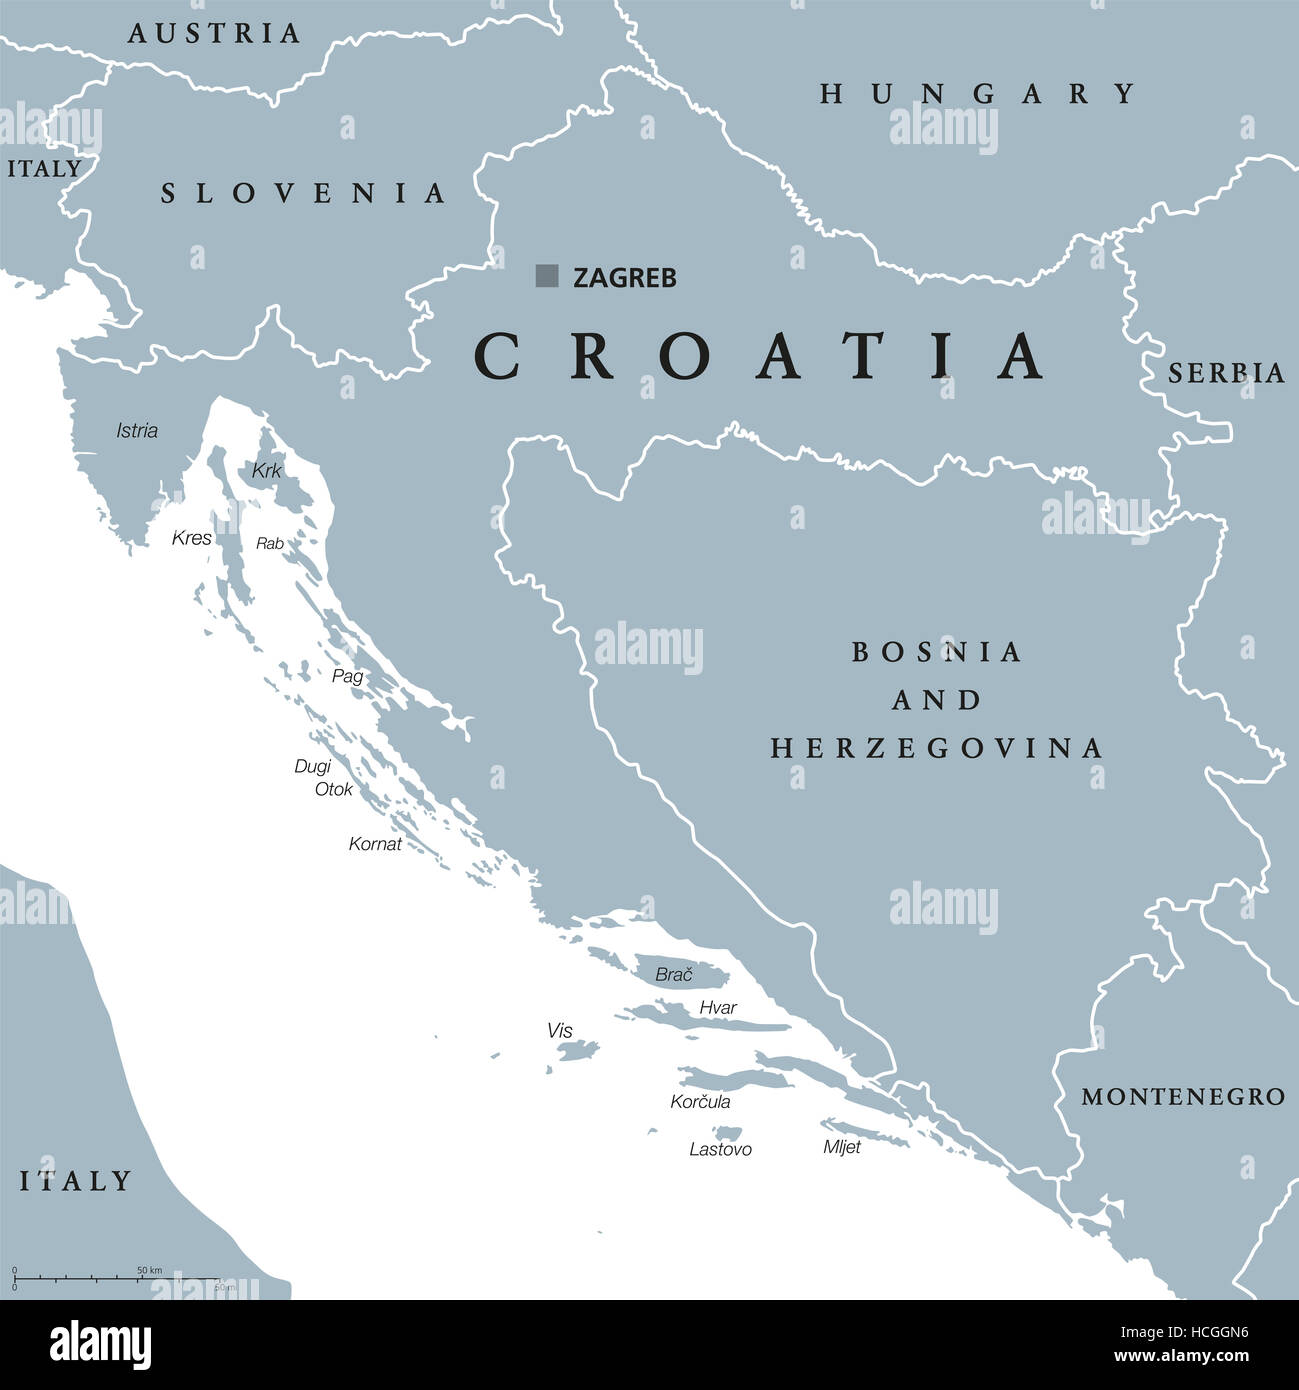 Carte politique de la Croatie avec capitale Zagreb, les frontières nationales et les pays voisins. Gris illustration avec l'anglais à l'étiquetage. Banque D'Images